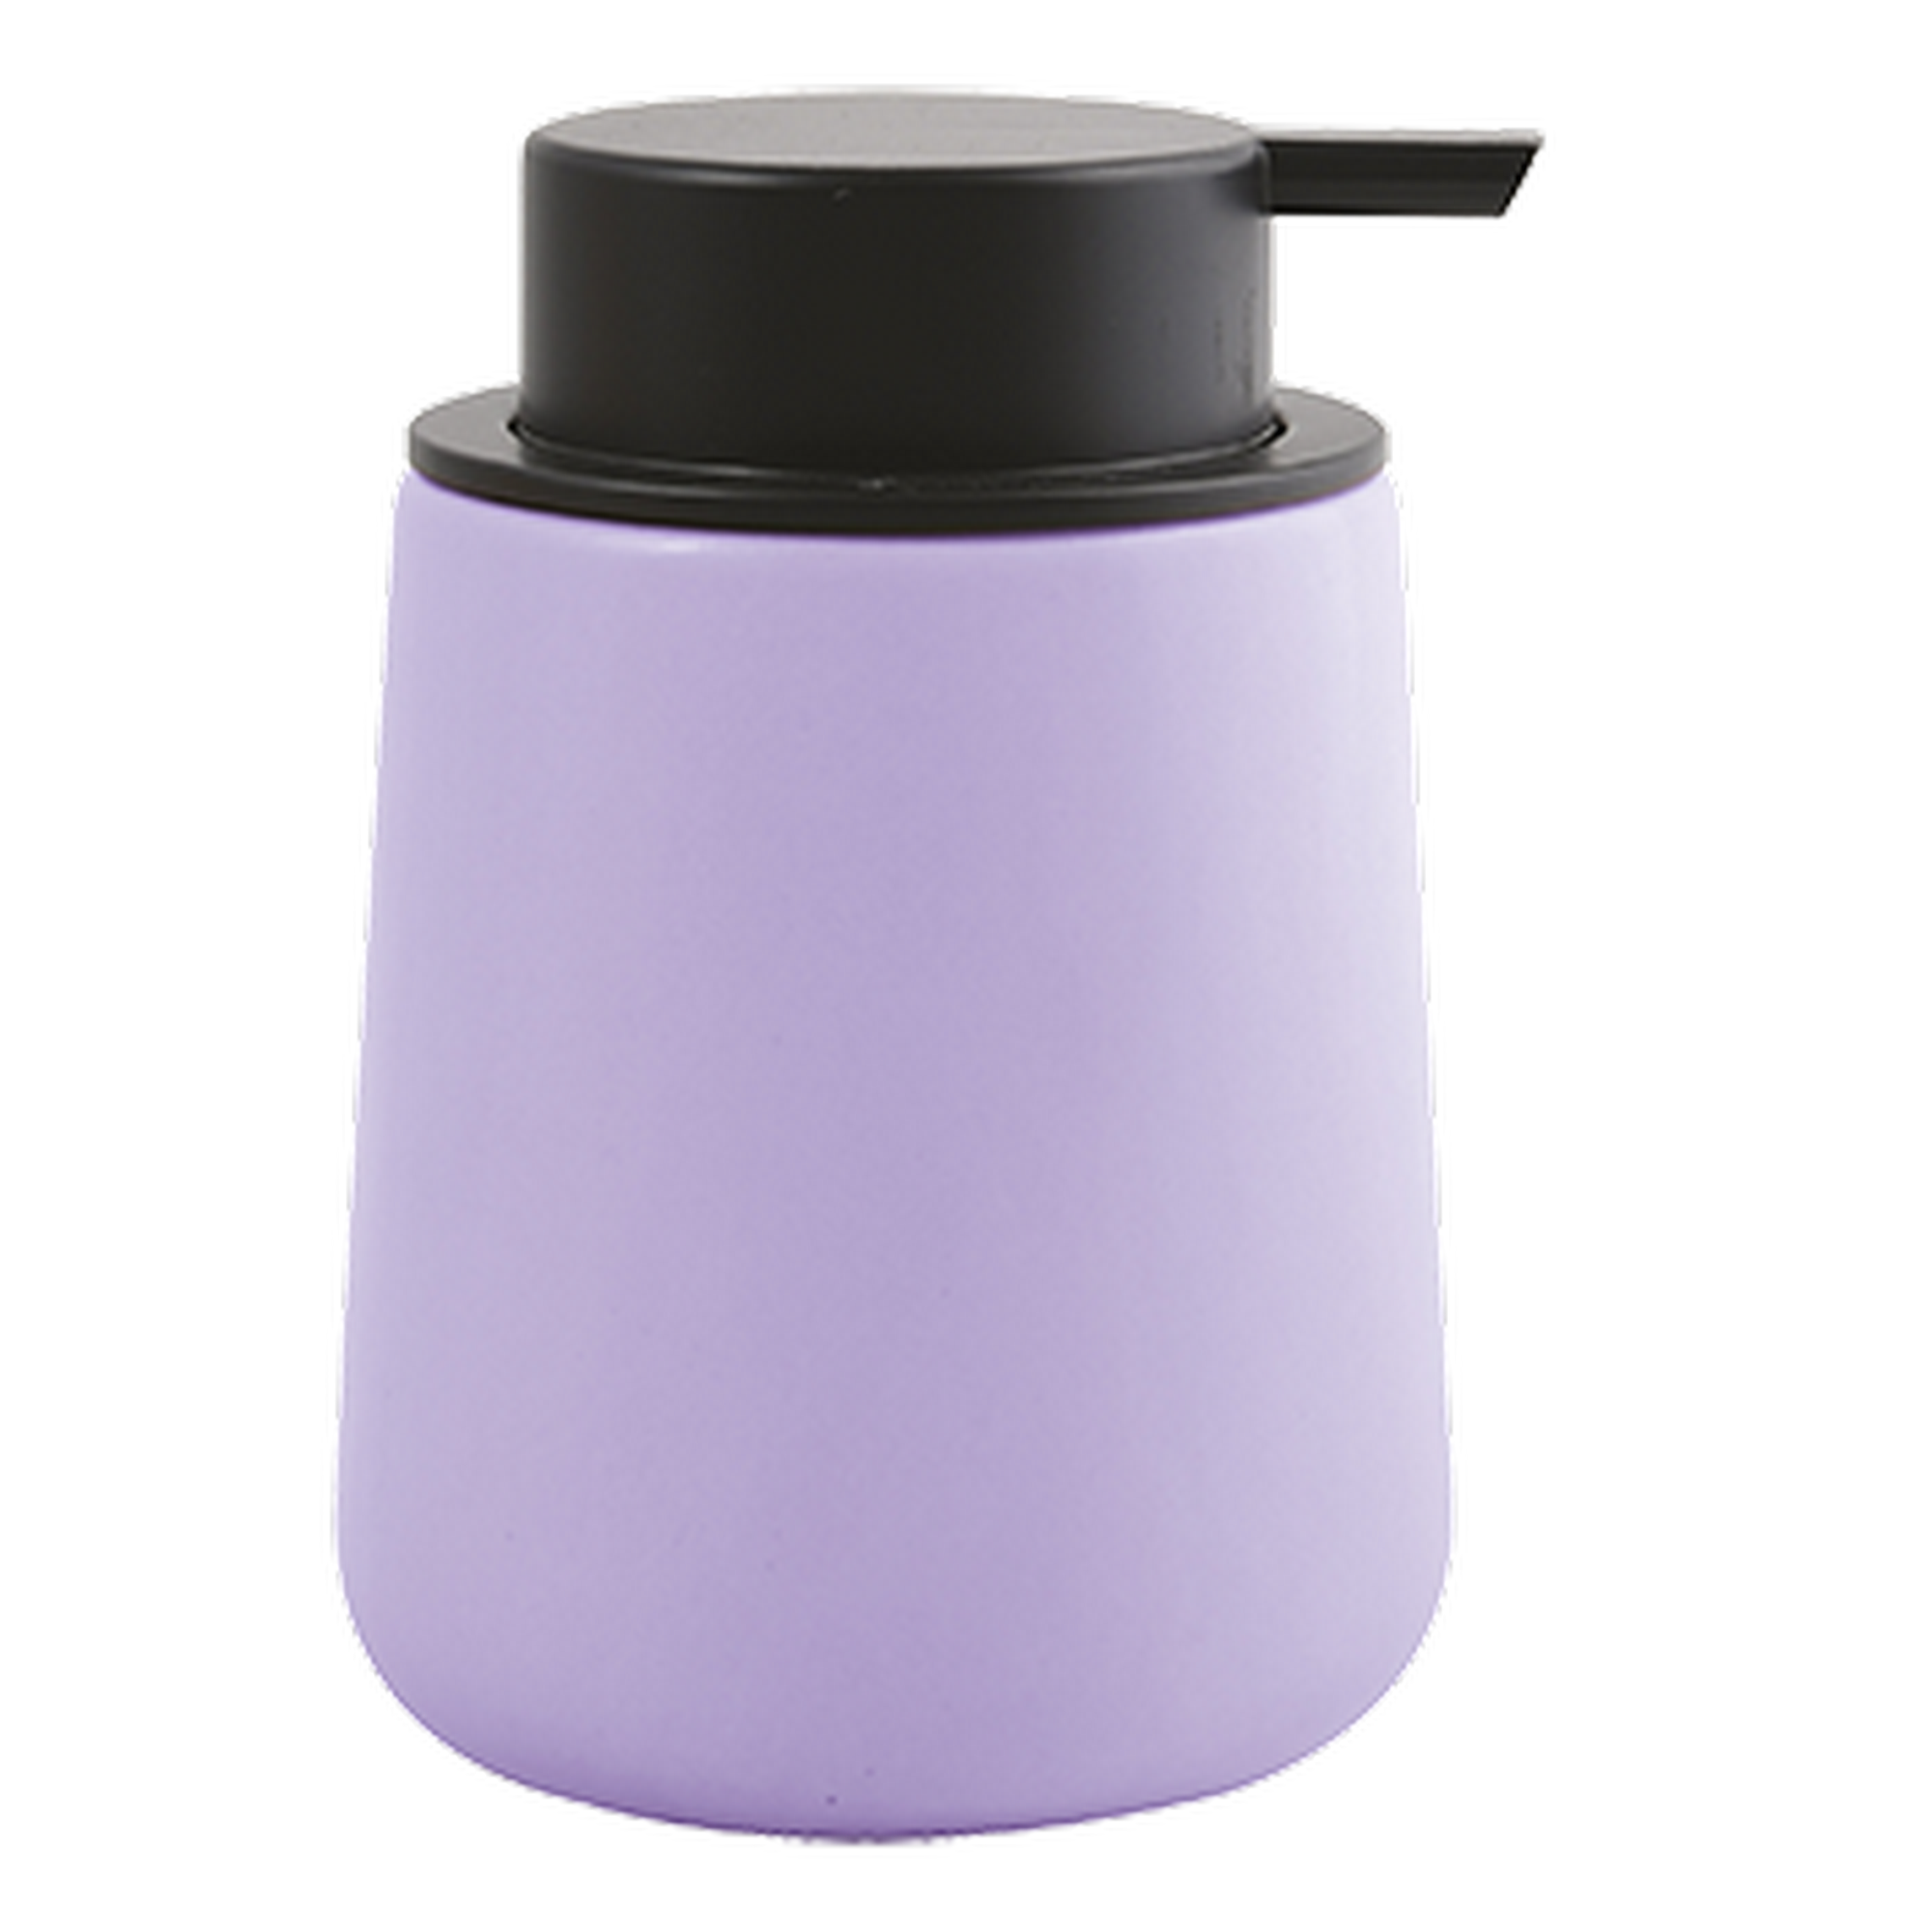 Seifenspender 'Maonie' Keramik lavendel 300 ml + product picture